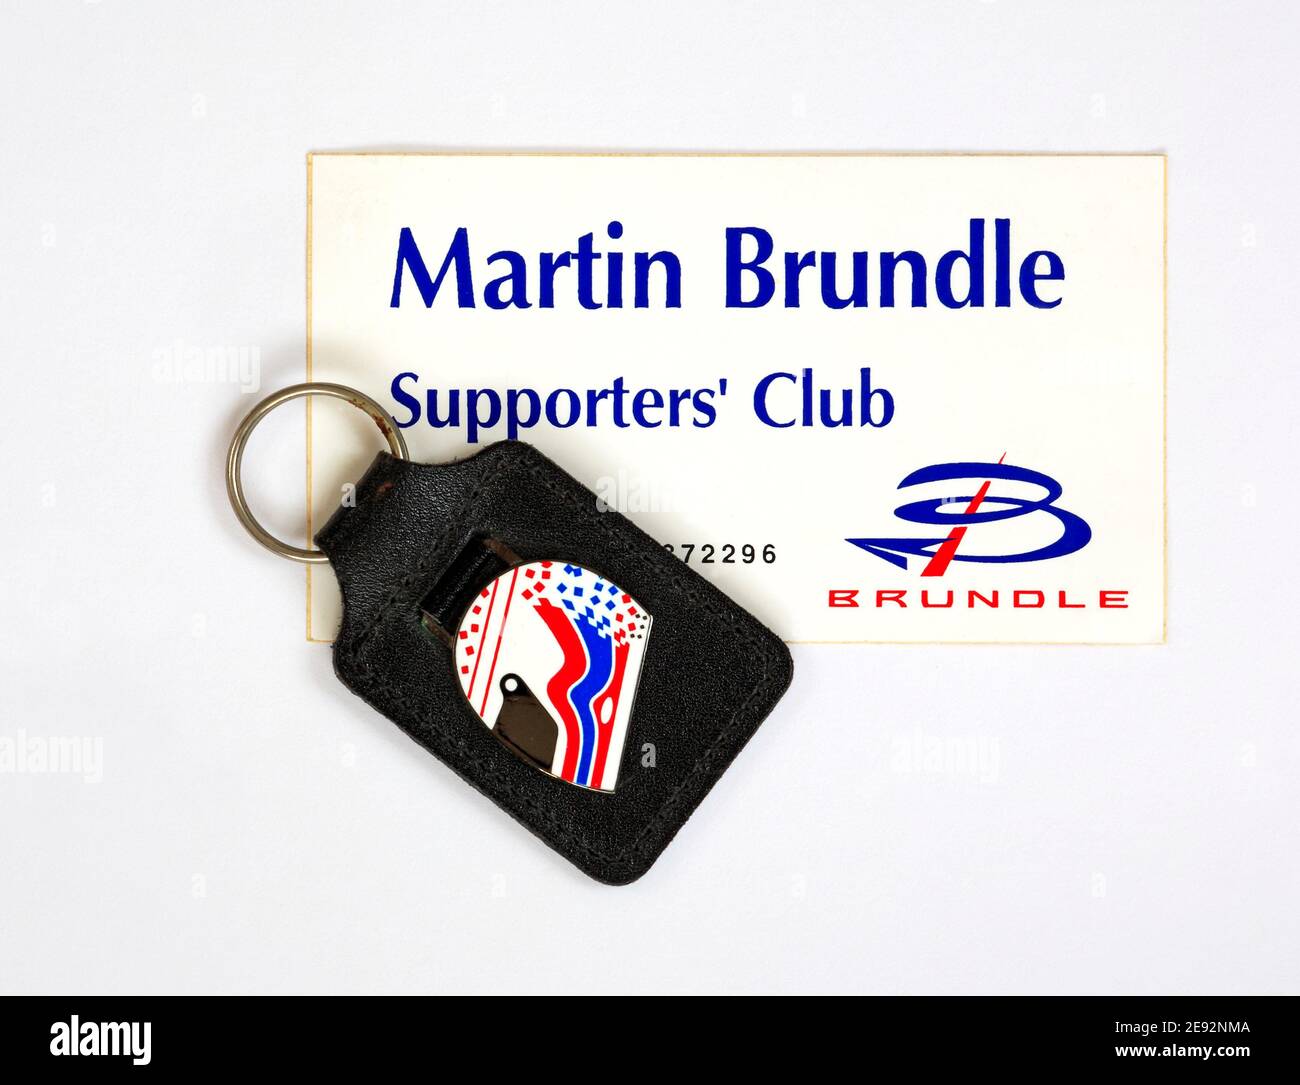 Memorabilien der Formel 1 des ehemaligen Piloten Martin Brundle aus dem Jahr F1, bestehend aus der Supporters Club-Karte und dem Schlüsselring aus dem Jahr 1997, während ein Jordan-Teamfahrer war. Stockfoto